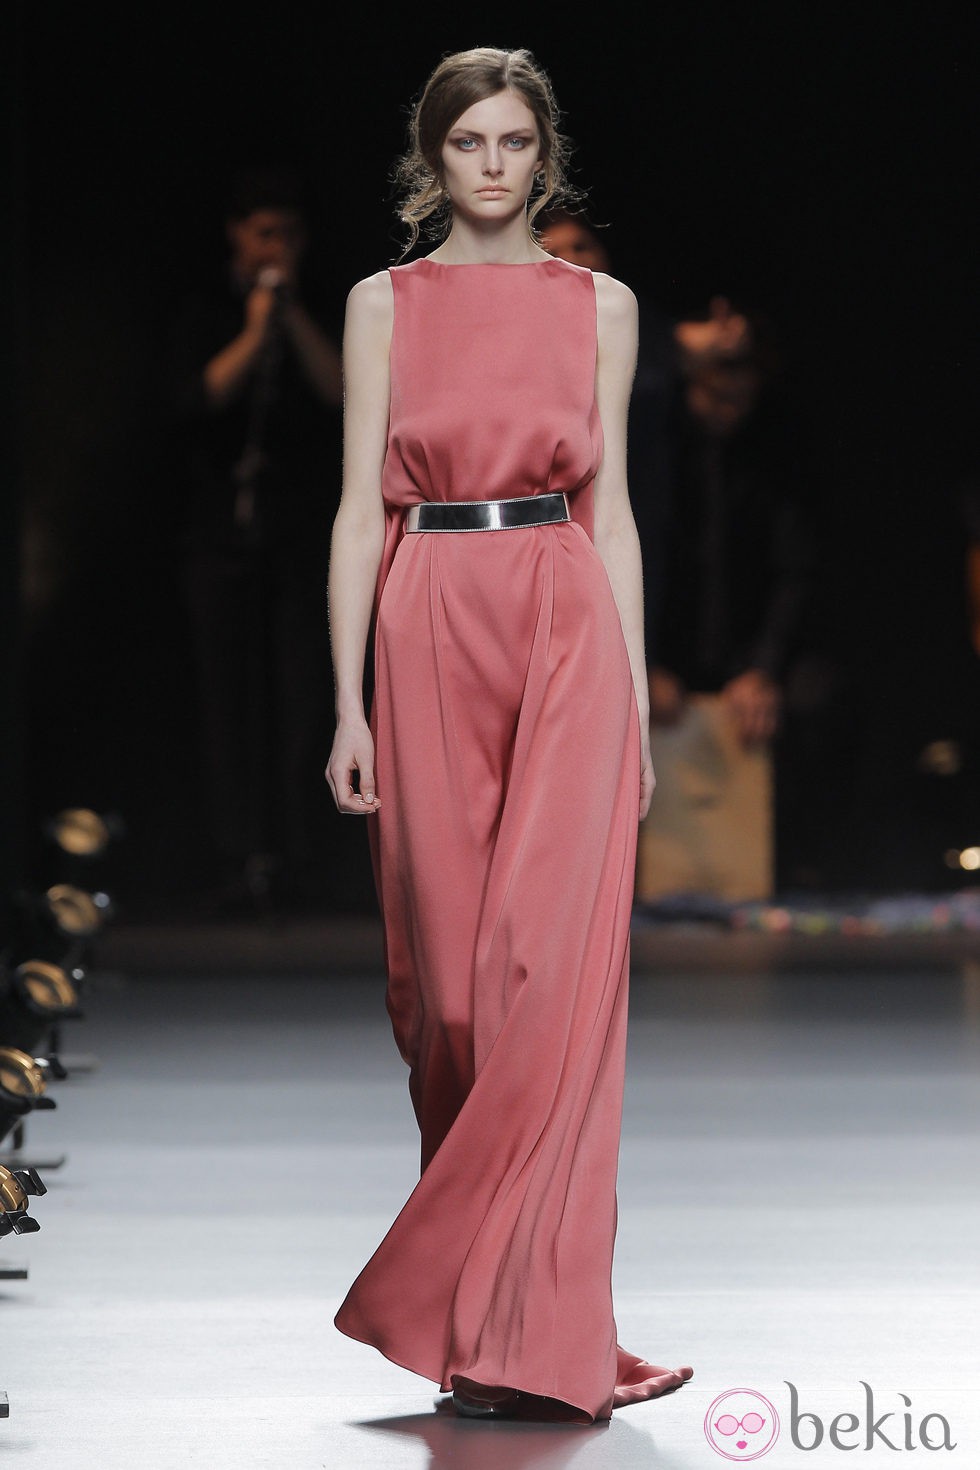 Vestido coral de la colección otoño/invierno 2013/2014 de Duyos en Madrid Fashion Week